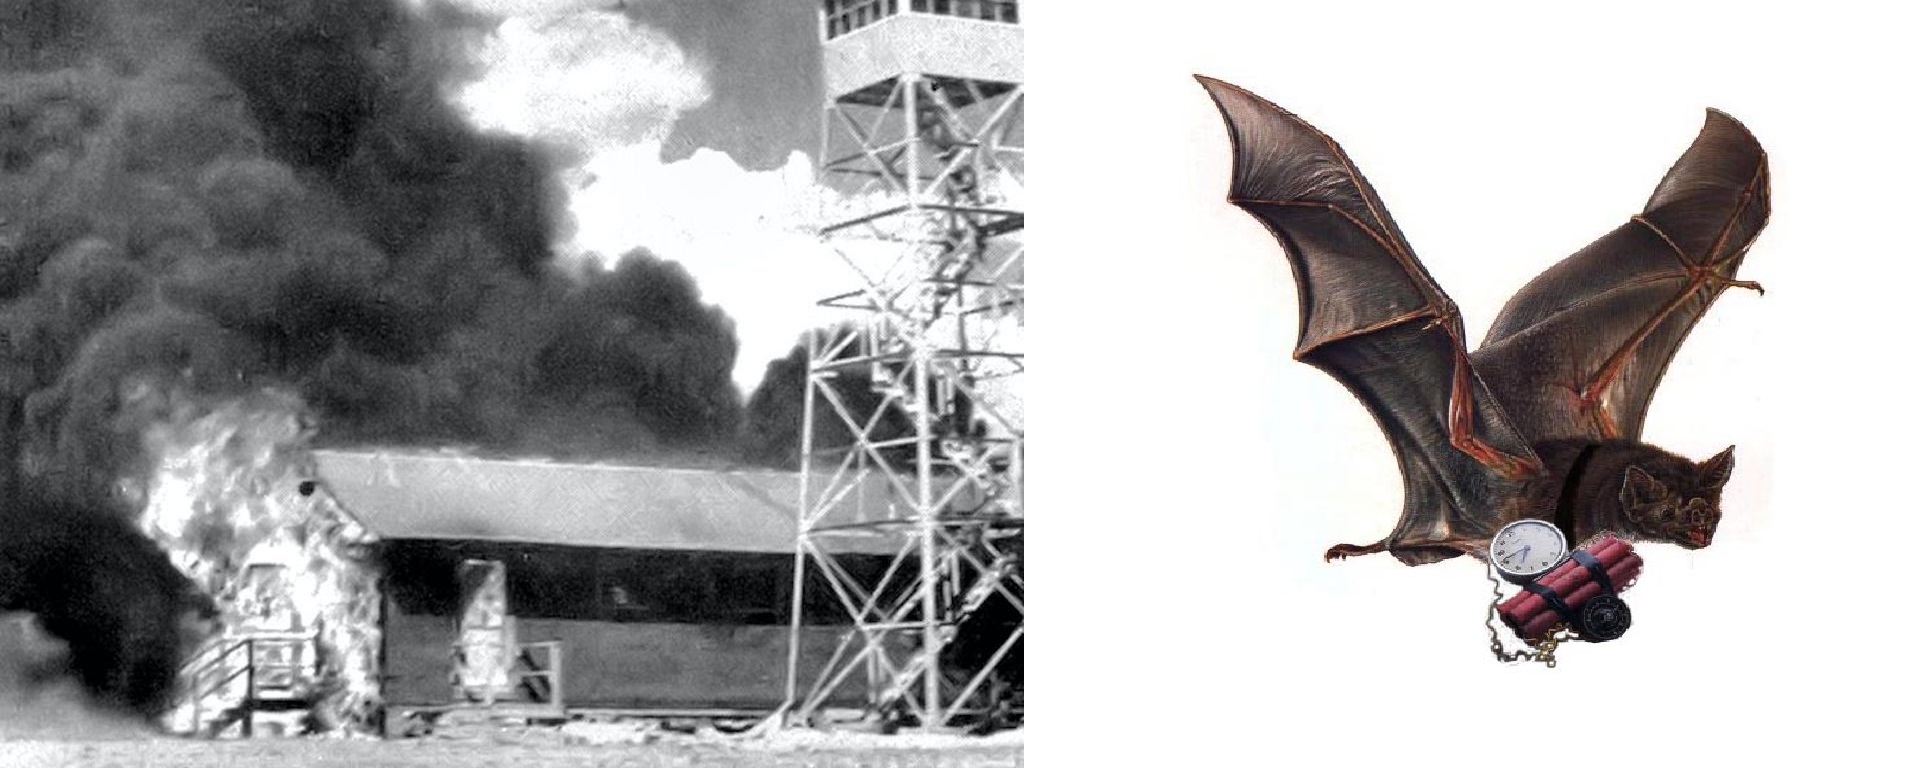 Νυχτερίδες με ναπάλμ! Οι ΗΠΑ είχαν ολοκληρωμένο σχέδιο για εμπρησμό Ιαπωνικών πόλεων. Γιατί δεν το εφάρμοσαν